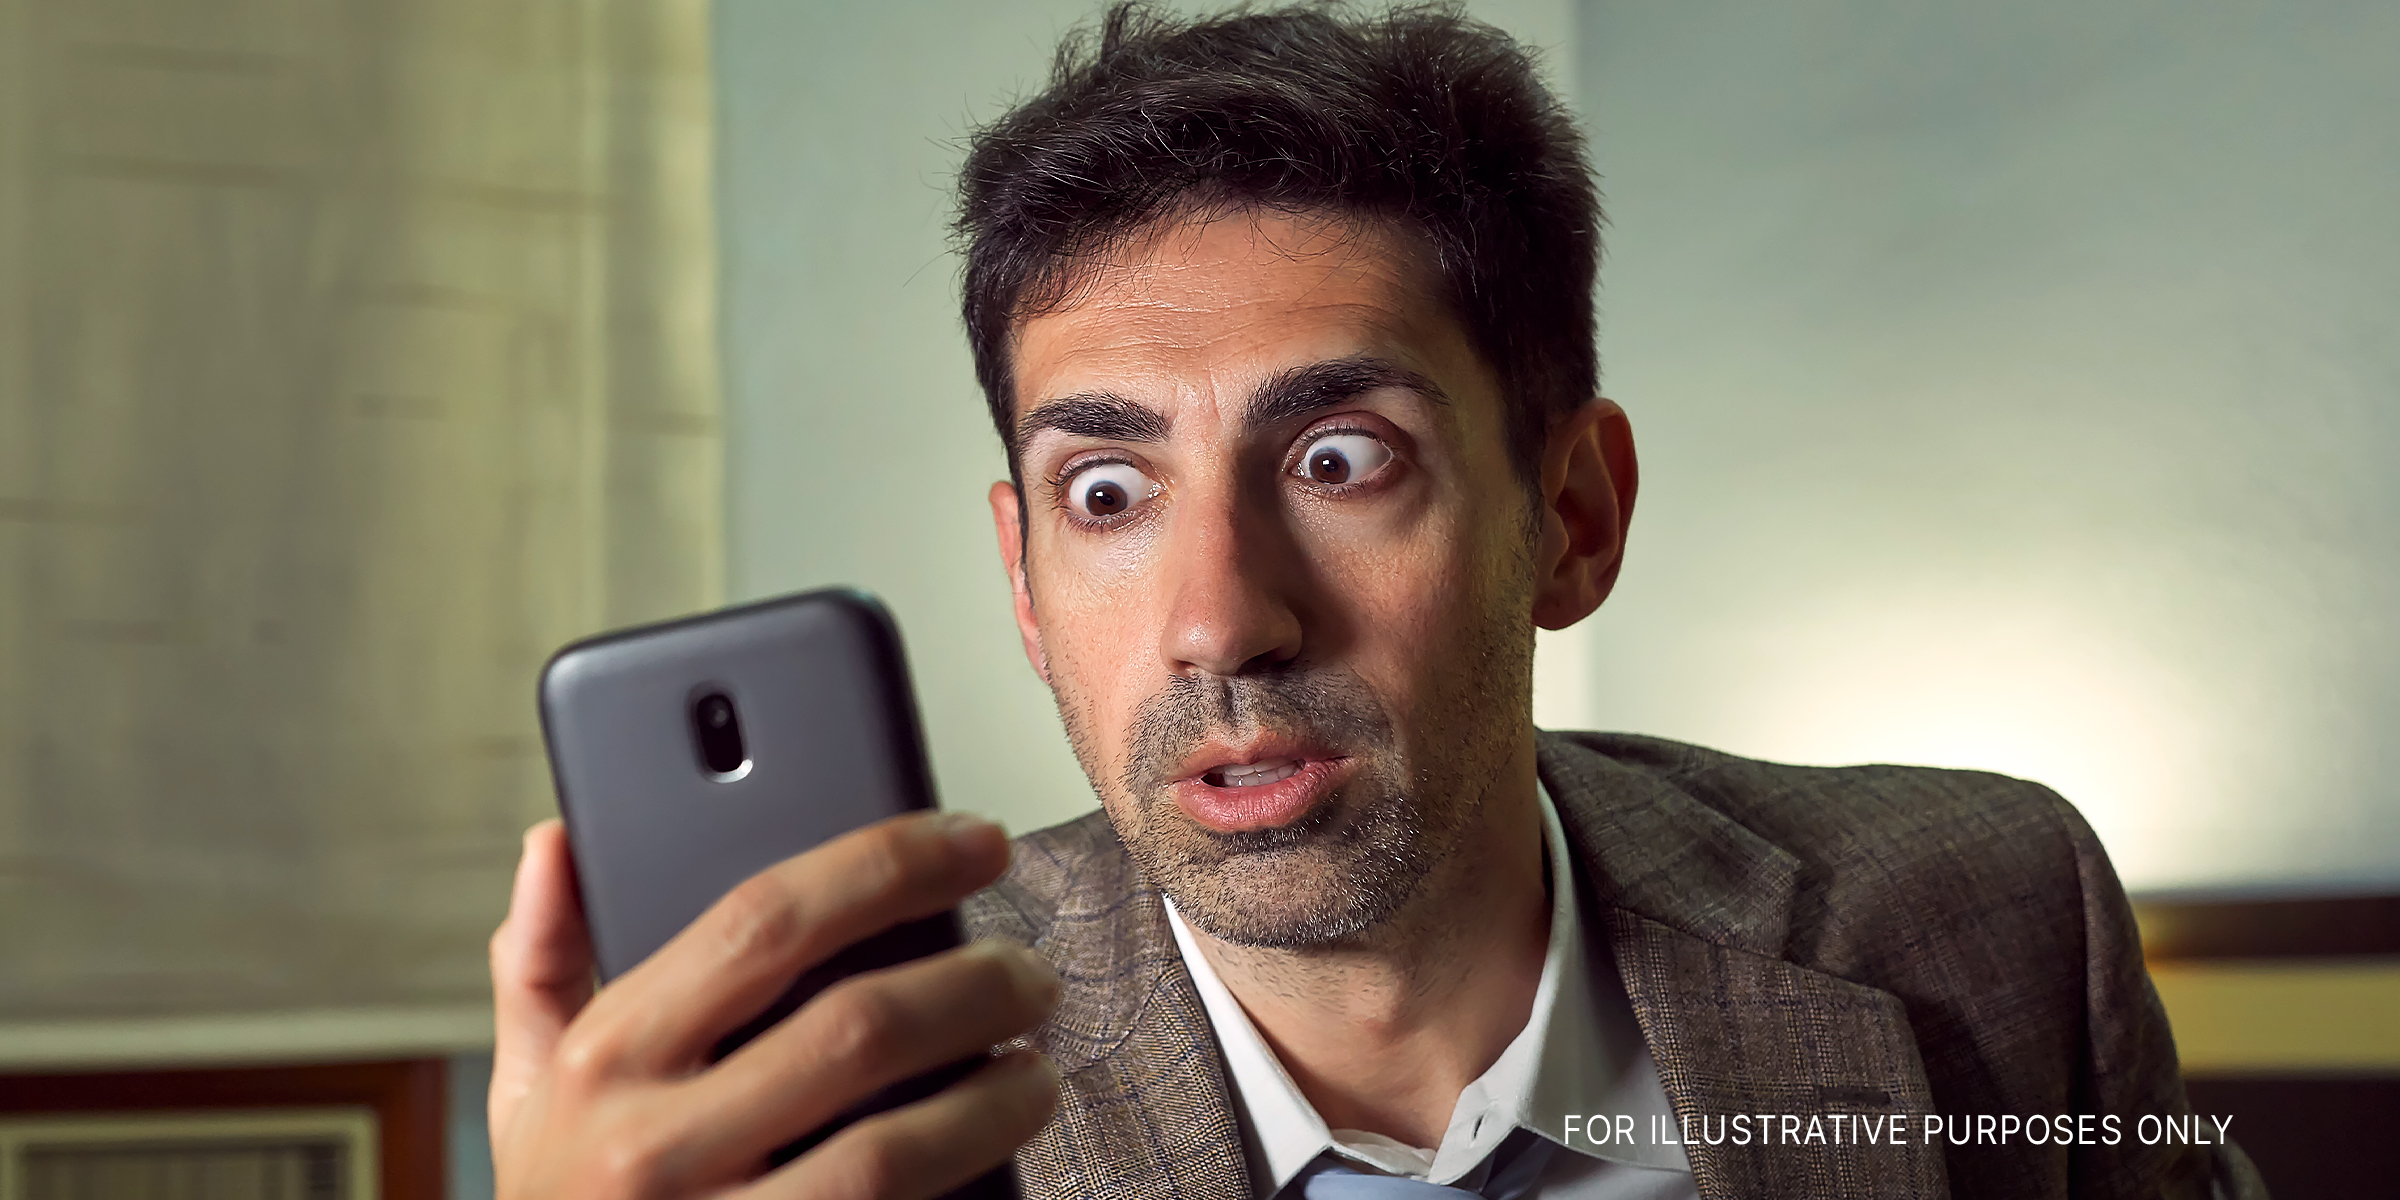 Ein Mann, der mit großen Augen auf sein Telefon schaut | Quelle: Shutterstock